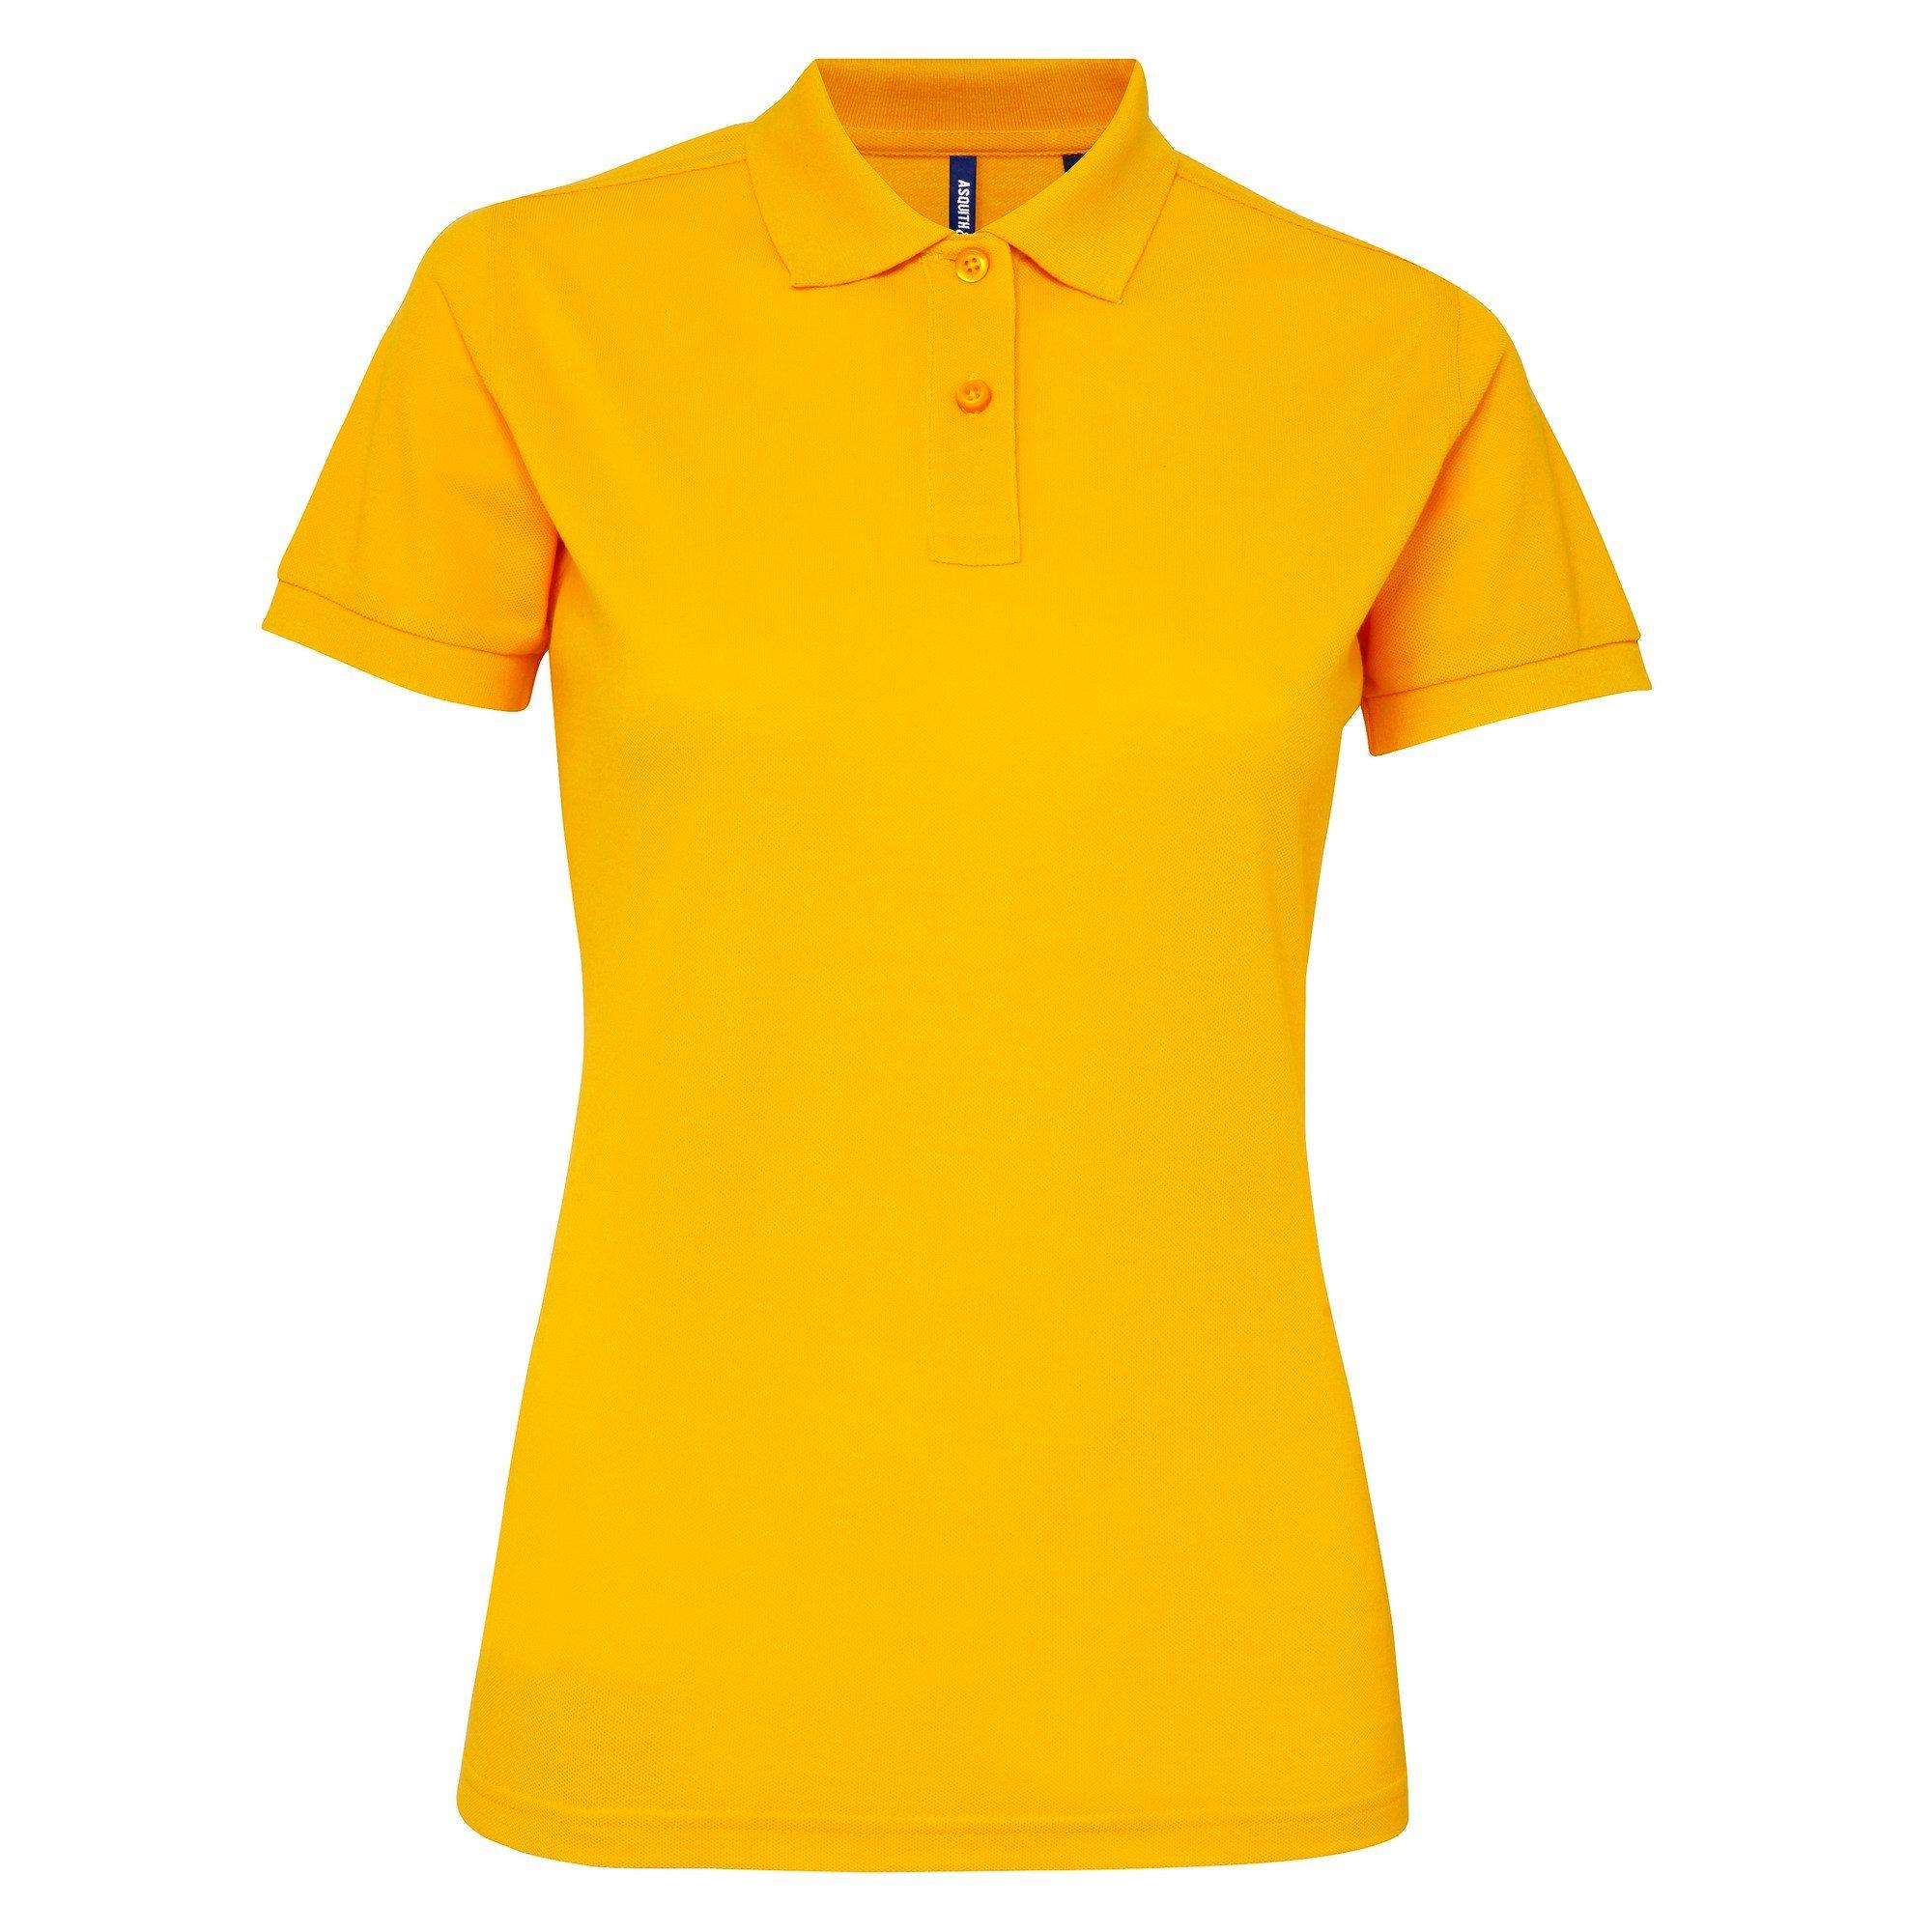 Kurzarm Performance Blend Polo Shirt Damen Gelb Bunt XS